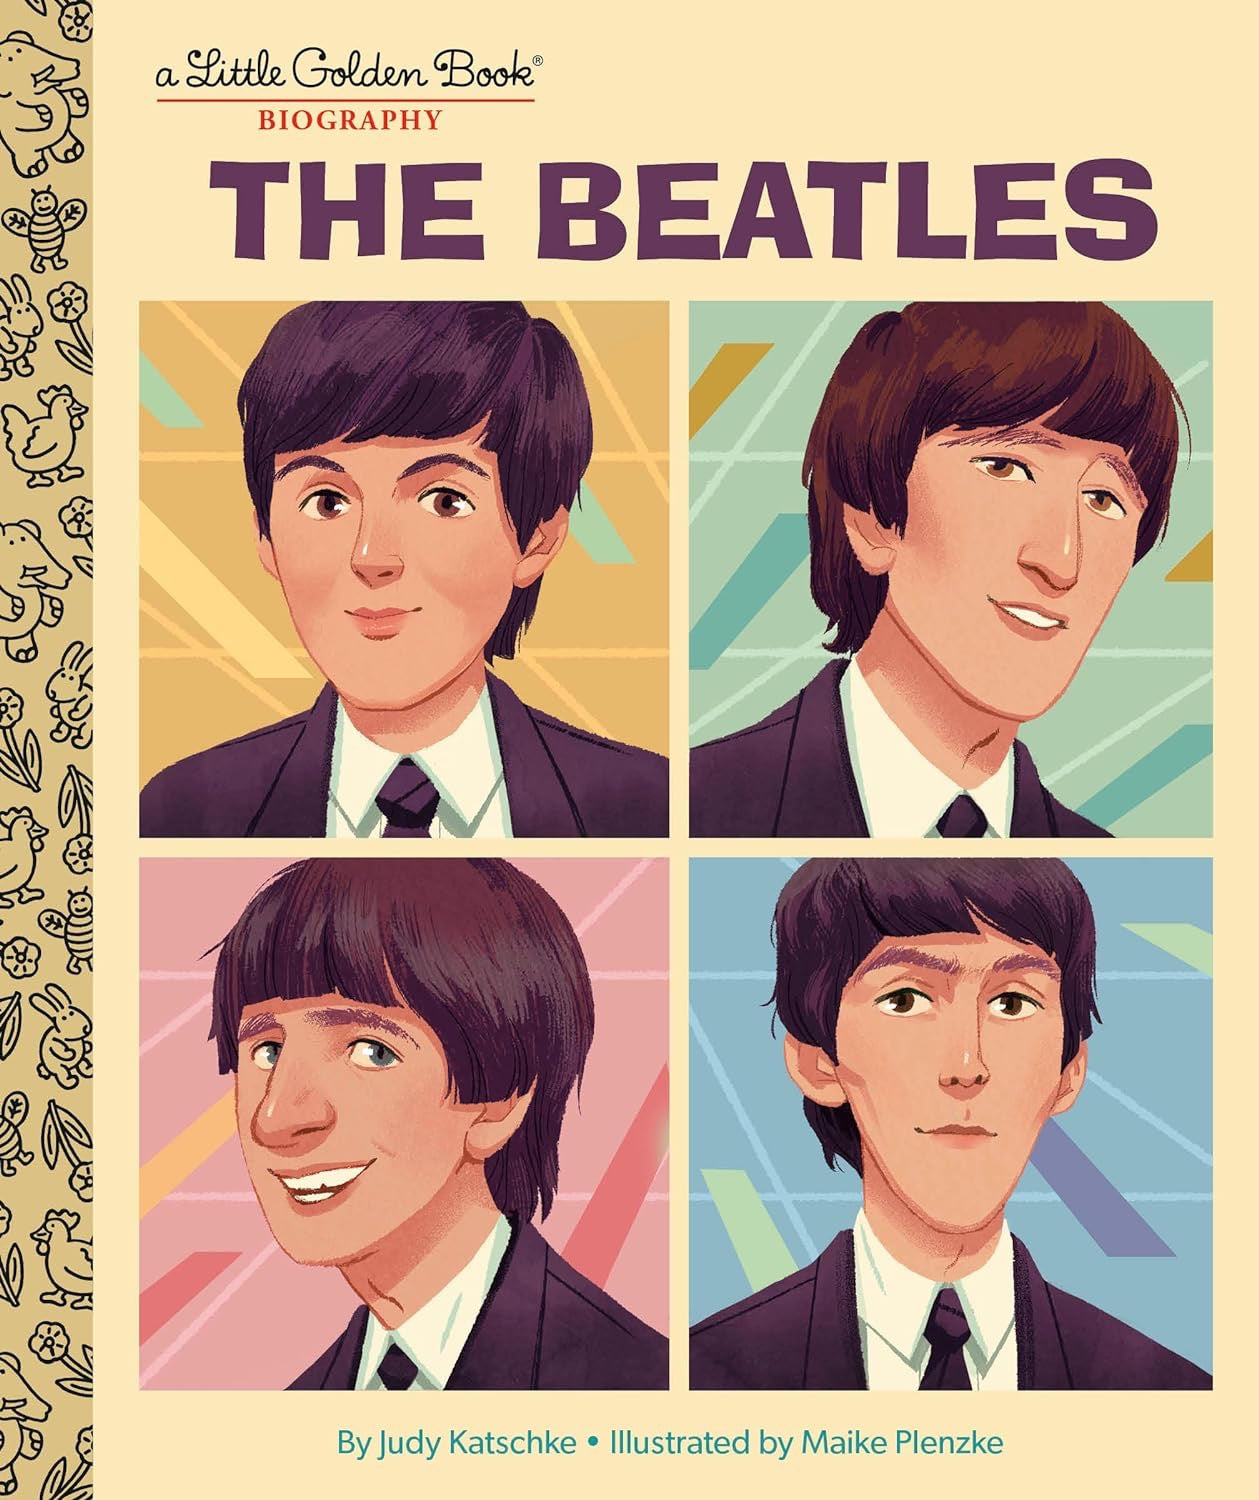 "The Beatles" Little Golden Book